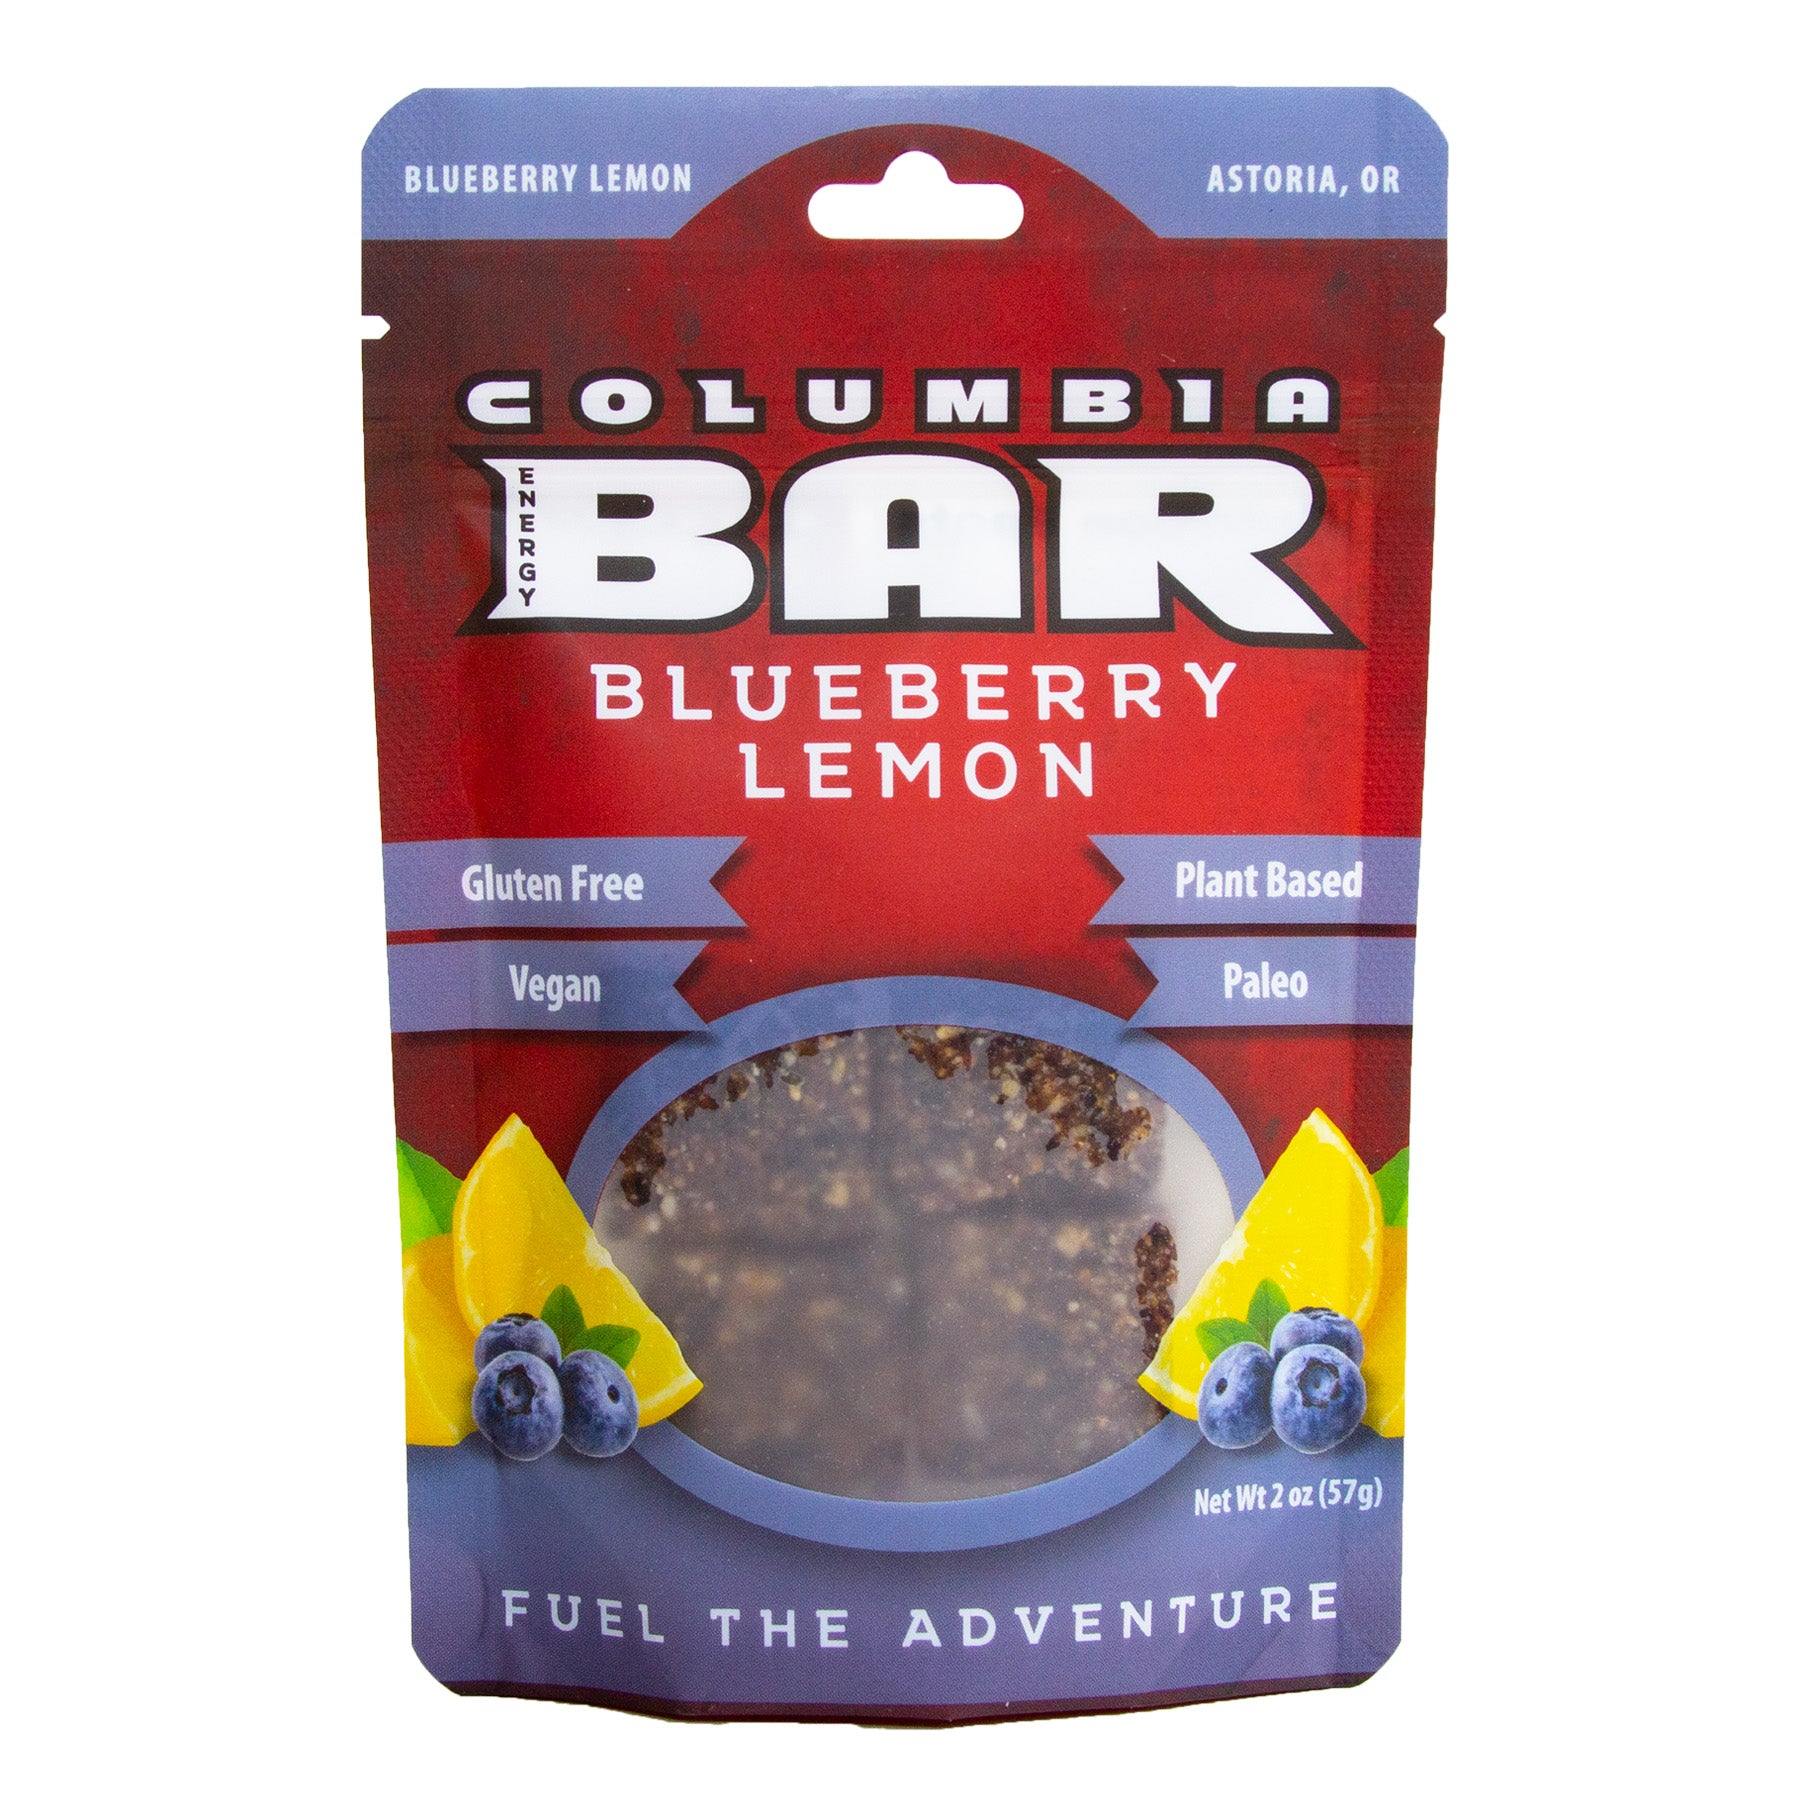 Columbia Bar Blueberry Lemon Snack Bar - 2 oz. pack